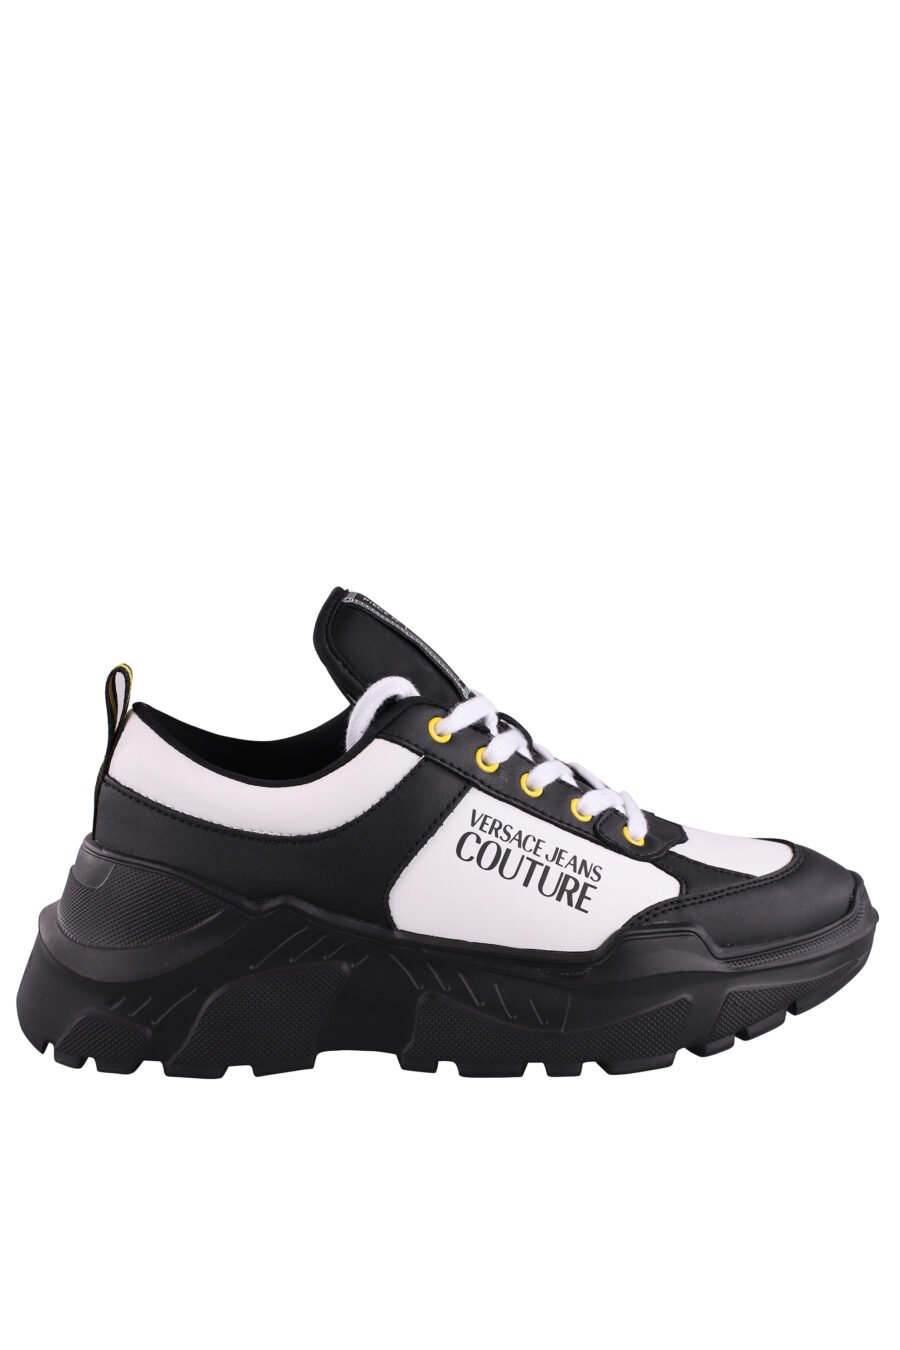 Zapatillas bicolor negras y blancas con logo y detalle amarillo - IMG 9067